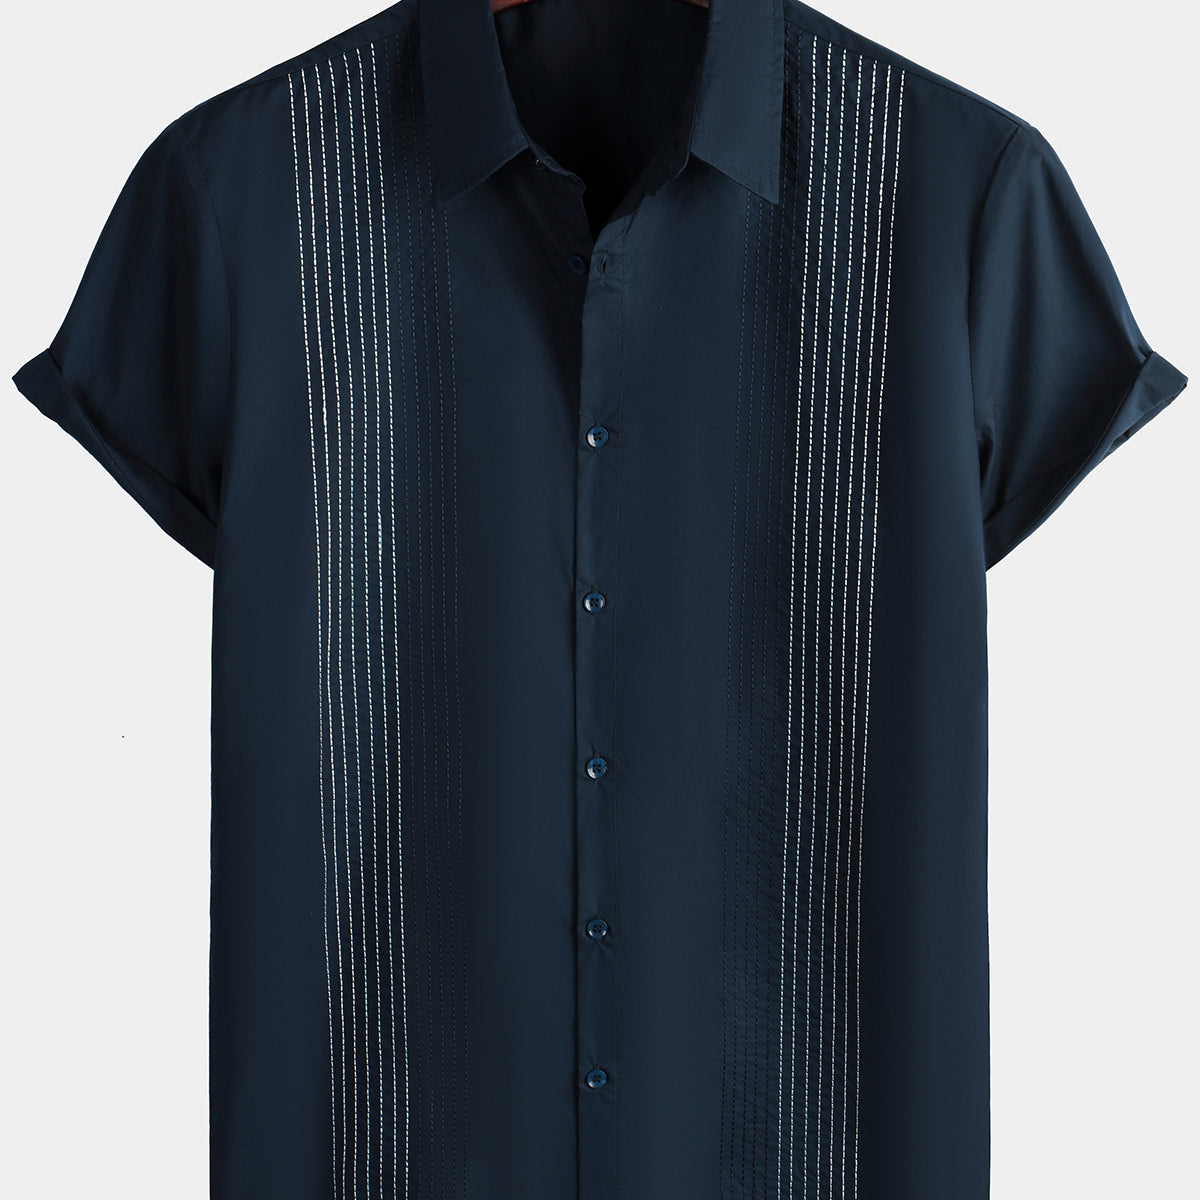 Men's Hawaiian Cotton Linen Striped Short Sleeve Button Up Summer Beach Embroidered Shirt